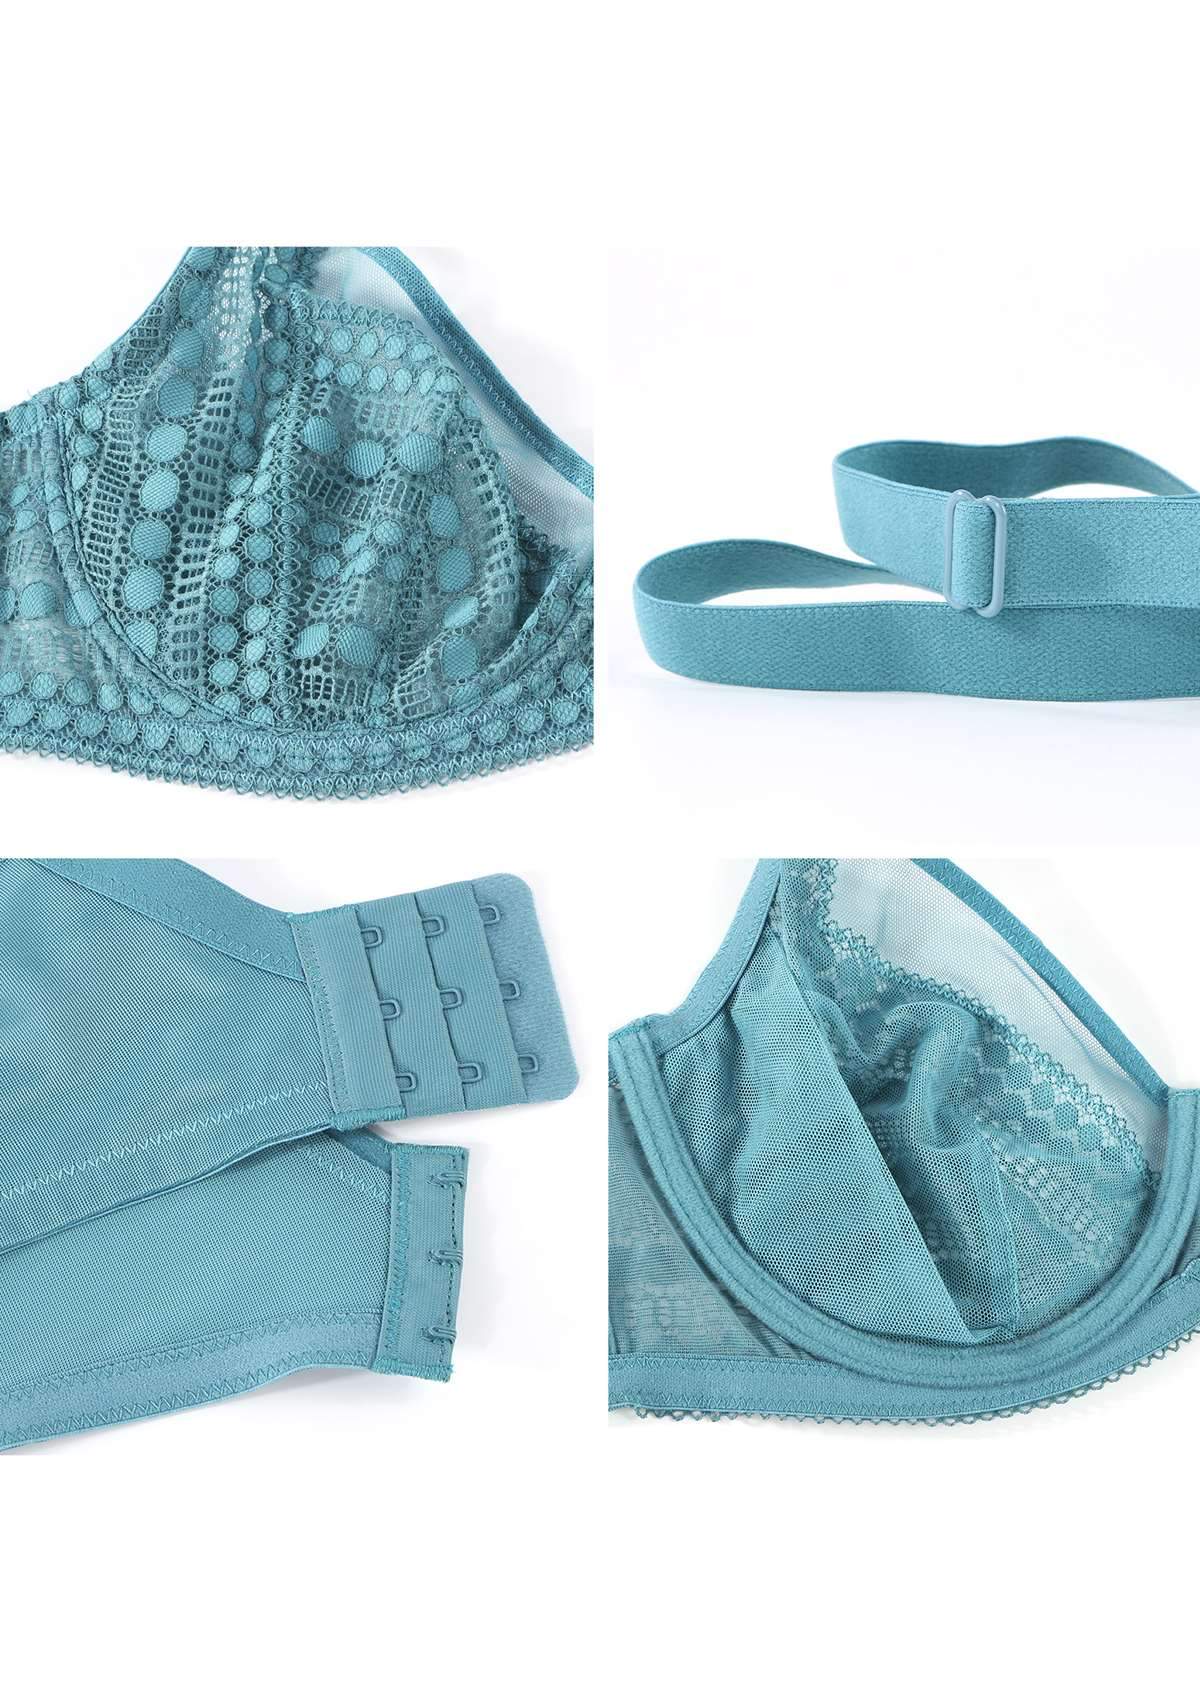 HSIA Heroine Matching Bra And Underwear Set: Bra For Big Boobs - Brittany Blue / 44 / C